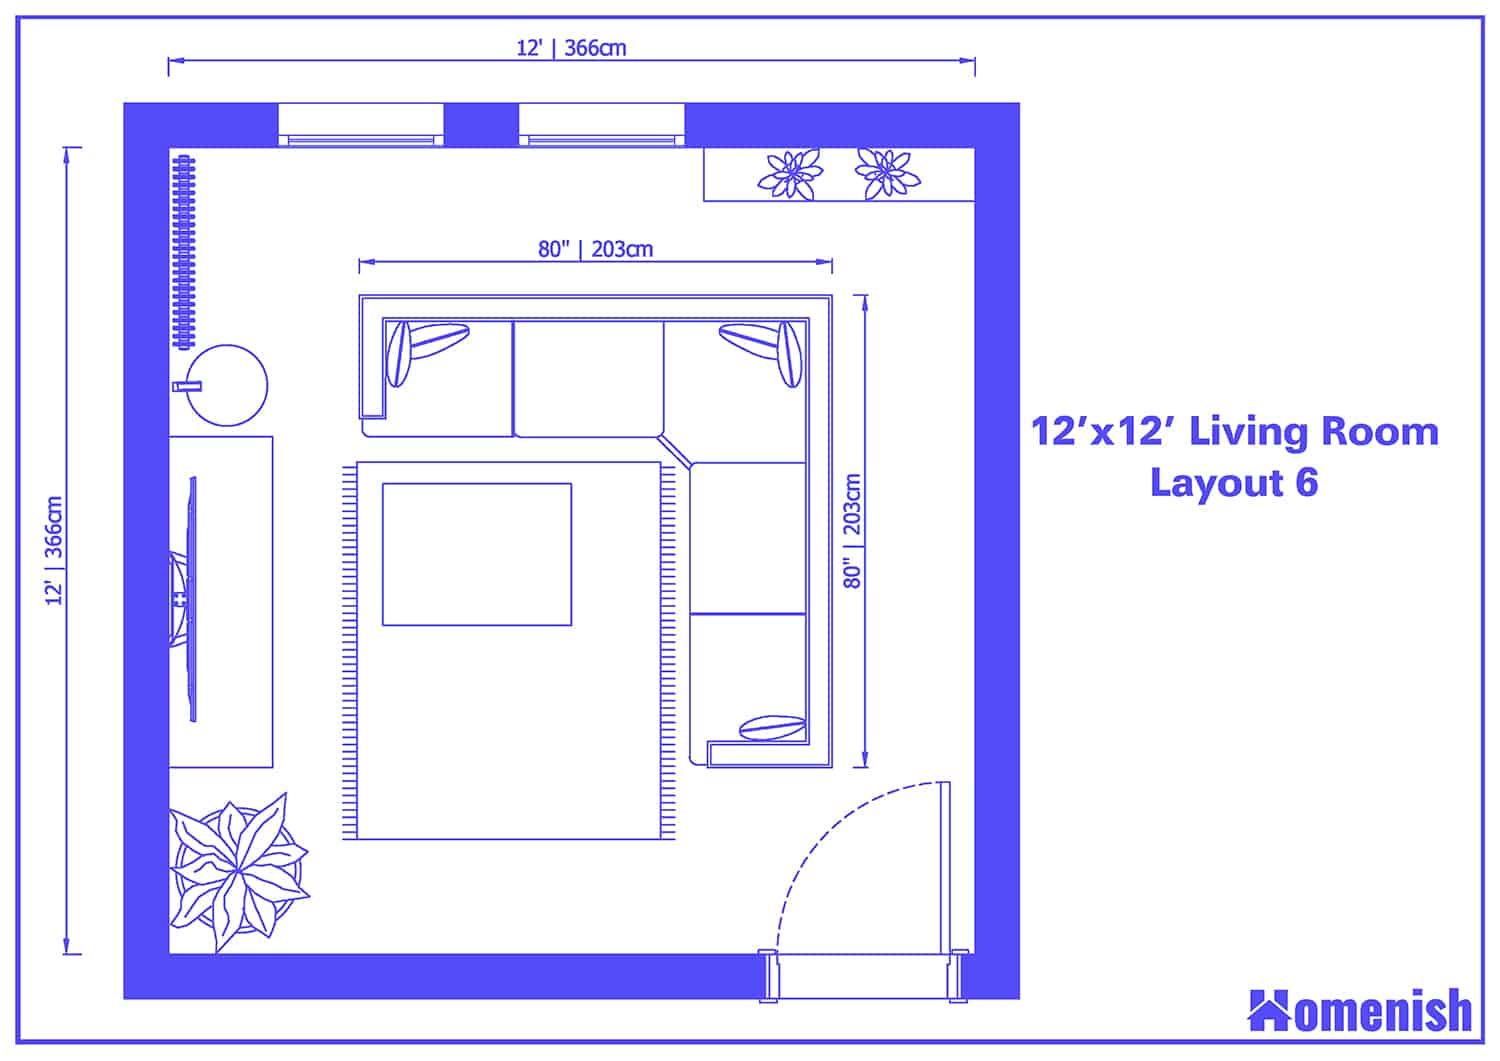 Floor Plan 12x12 Living Room Layout